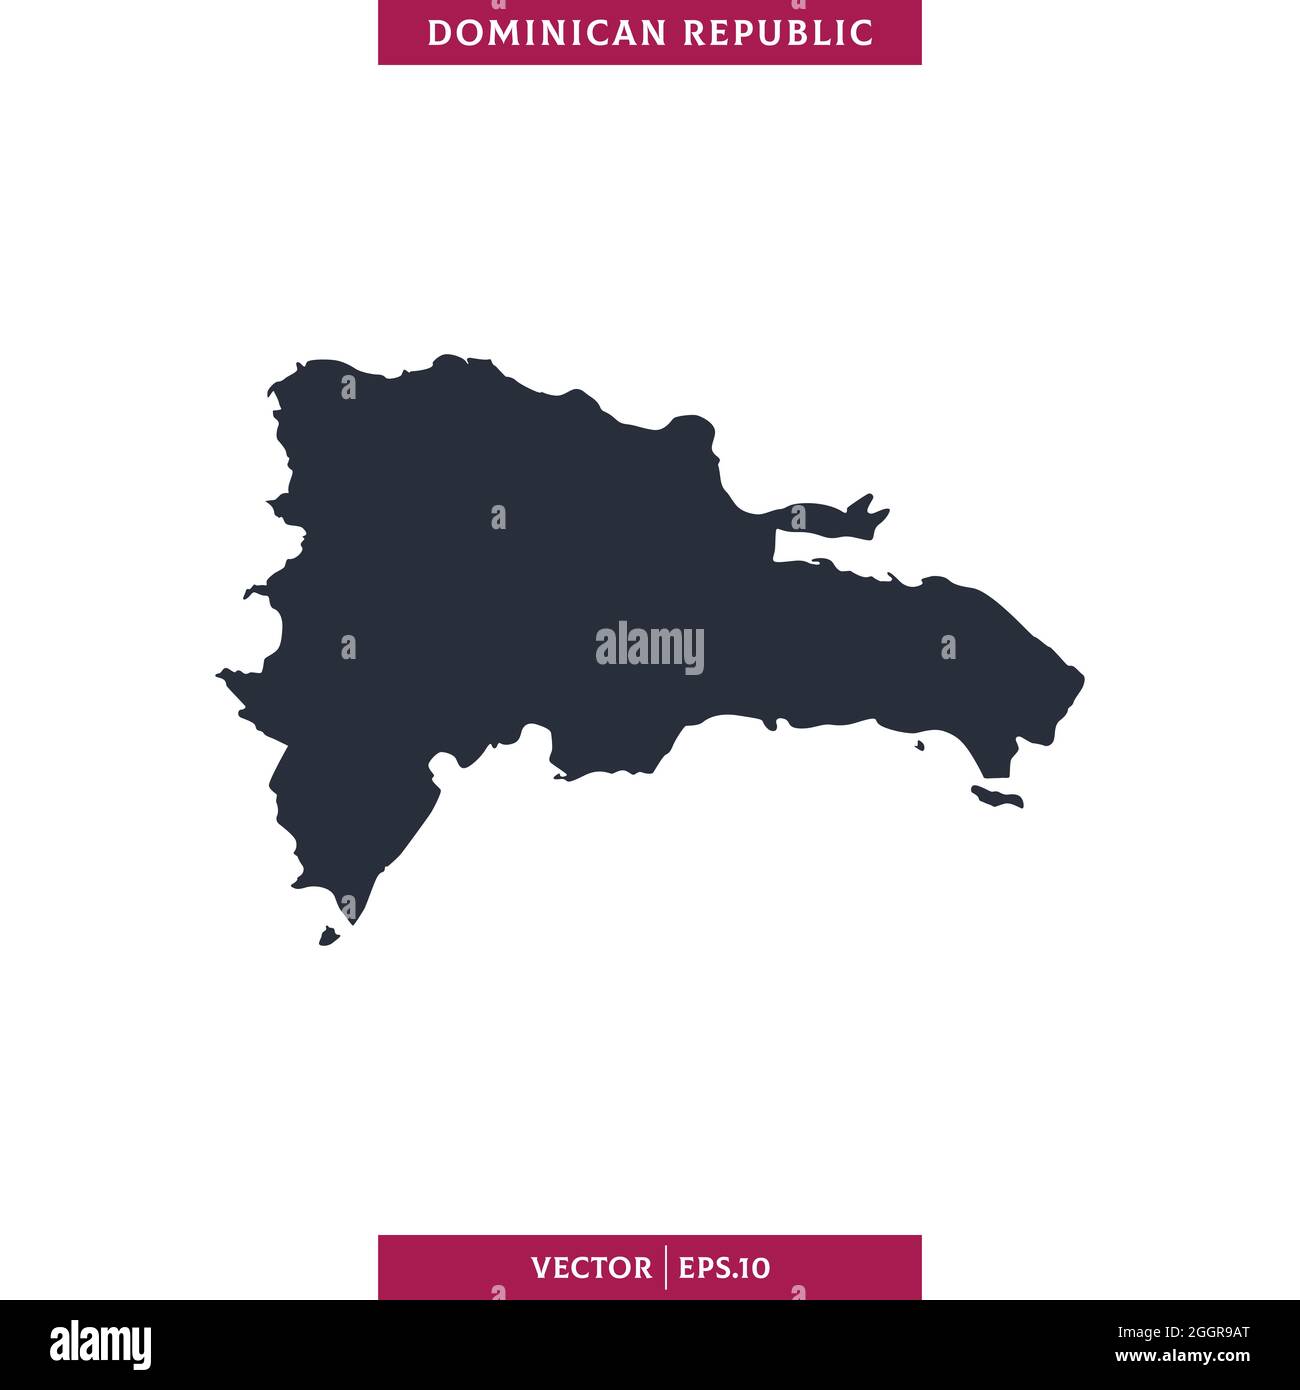 Mappa dettagliata della Repubblica Dominicana modello di disegno di disegno di disegno di stock vettoriale. Vettore eps 10. Illustrazione Vettoriale